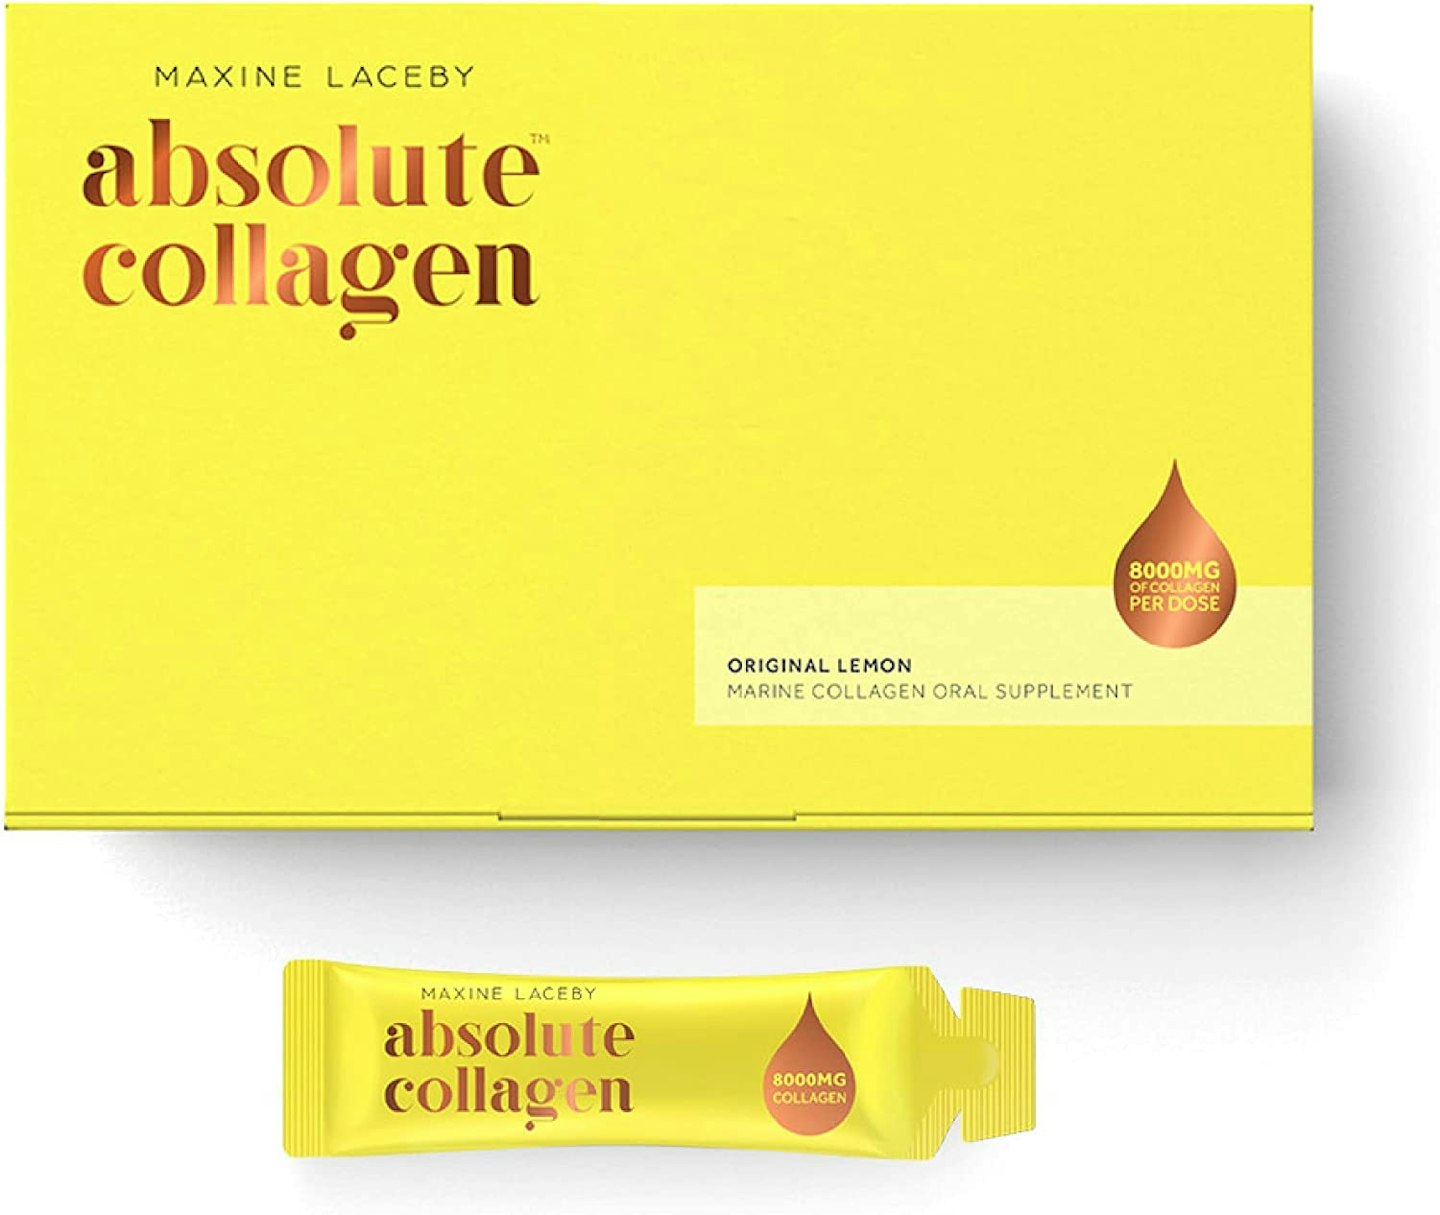 Absolute Collagen's Original Lemon Marine Collagen Oral Supplement